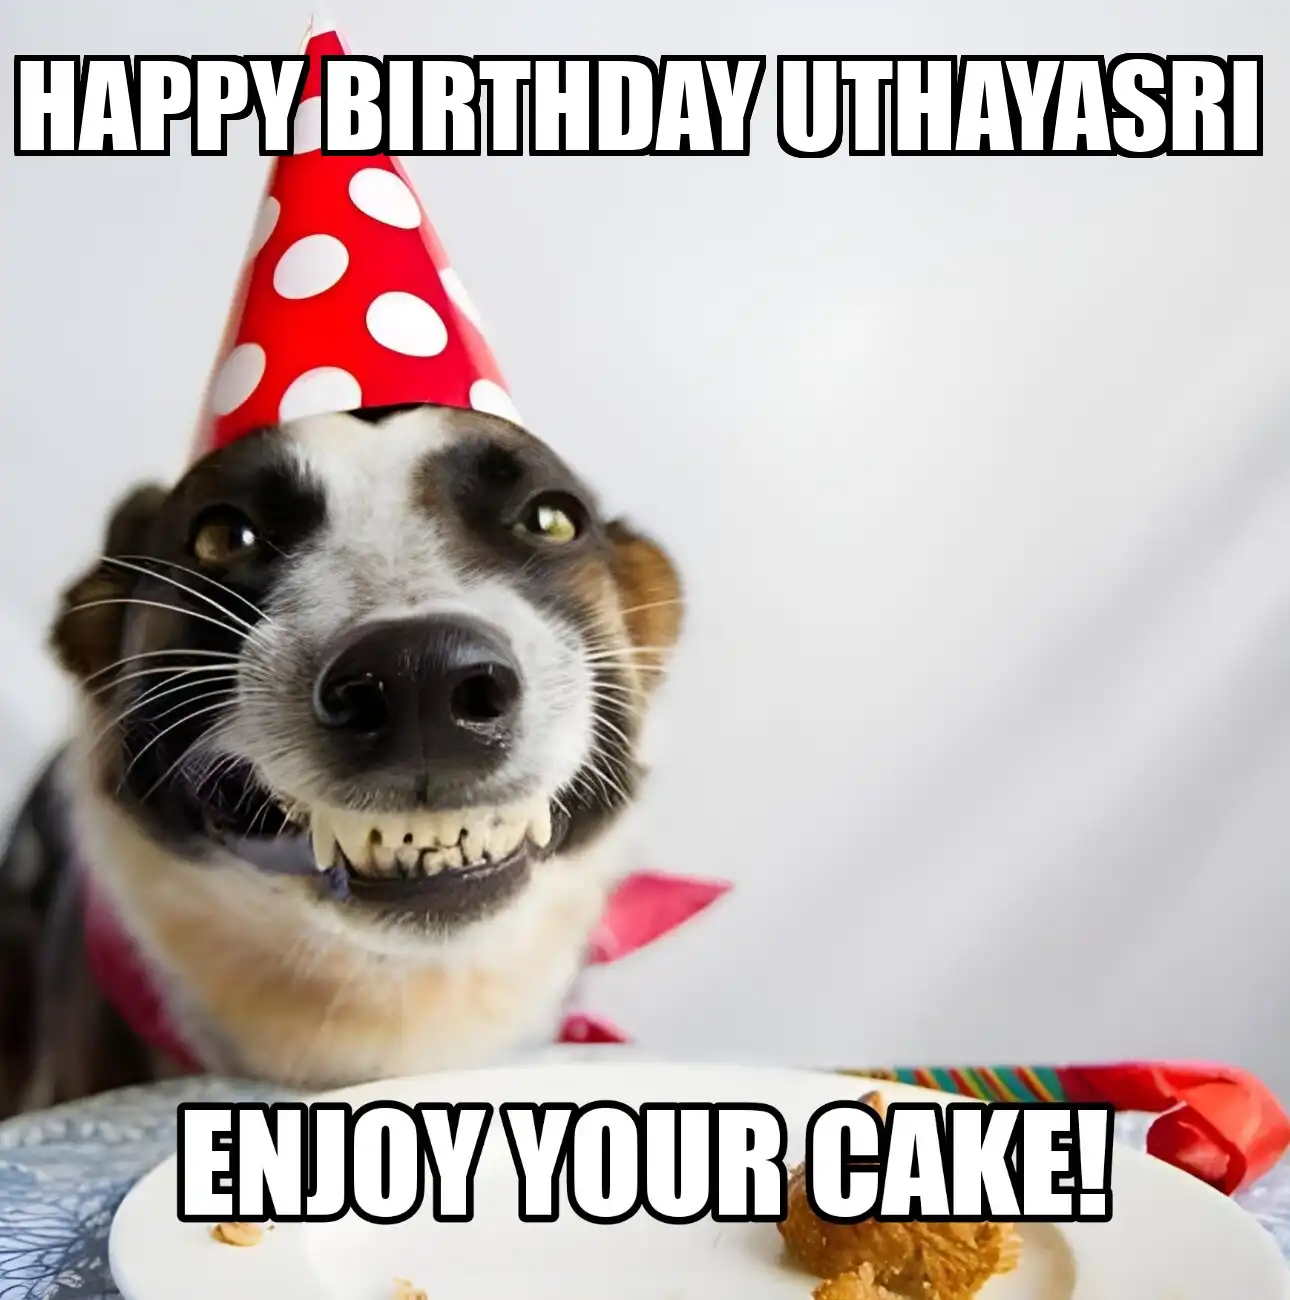 Happy Birthday Uthayasri Enjoy Your Cake Dog Meme